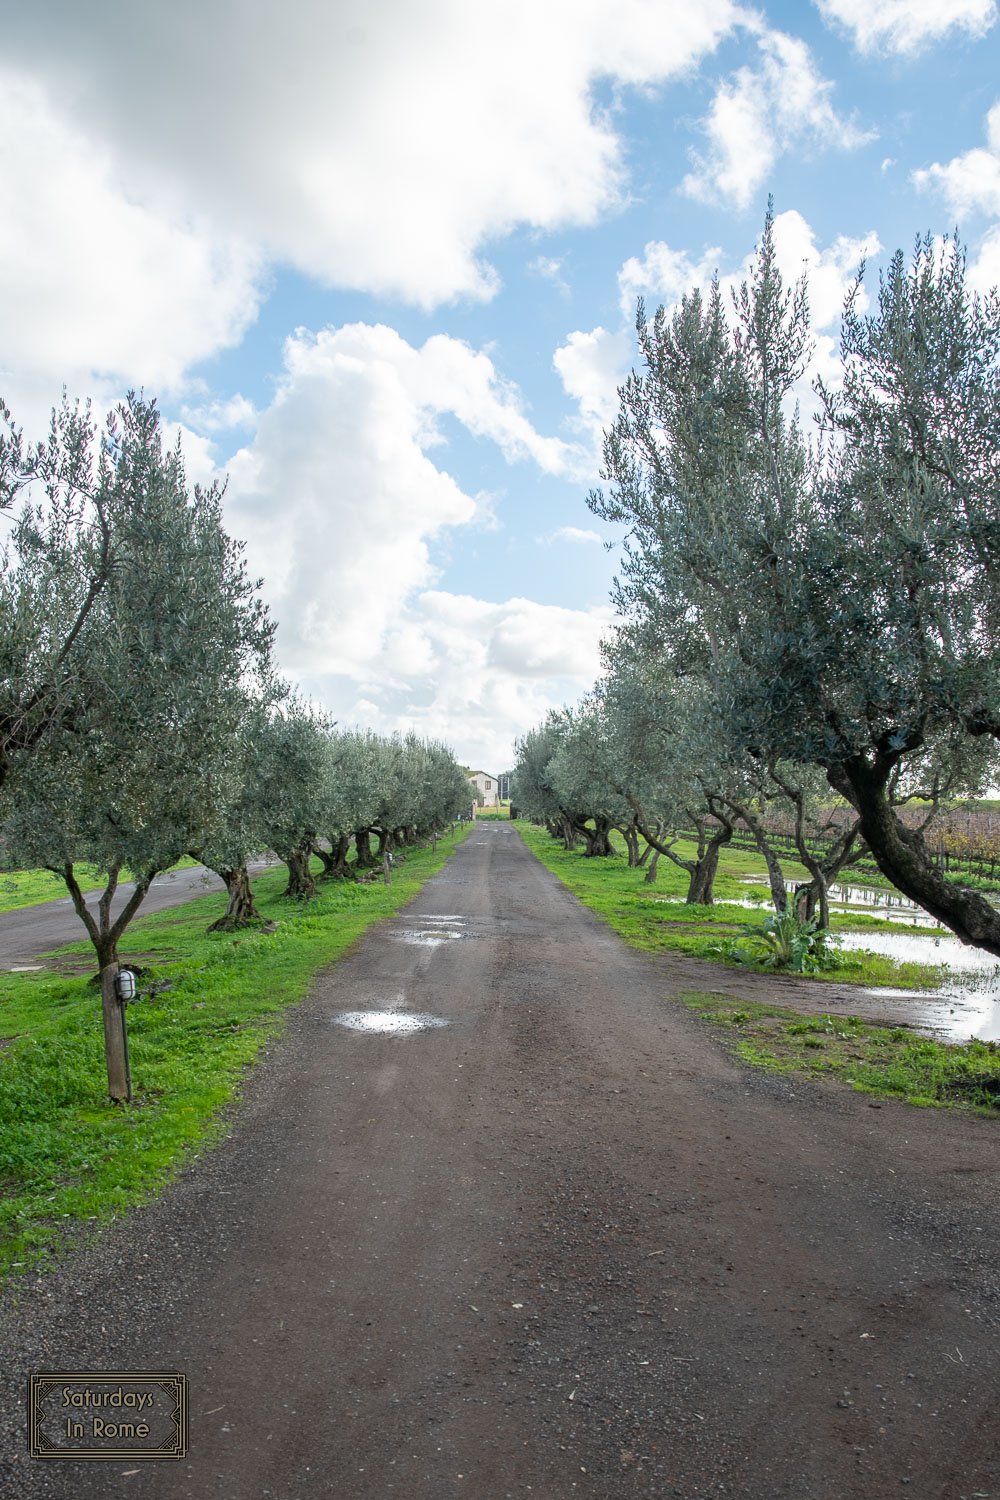 vineyards near rome italy - Olive Trees